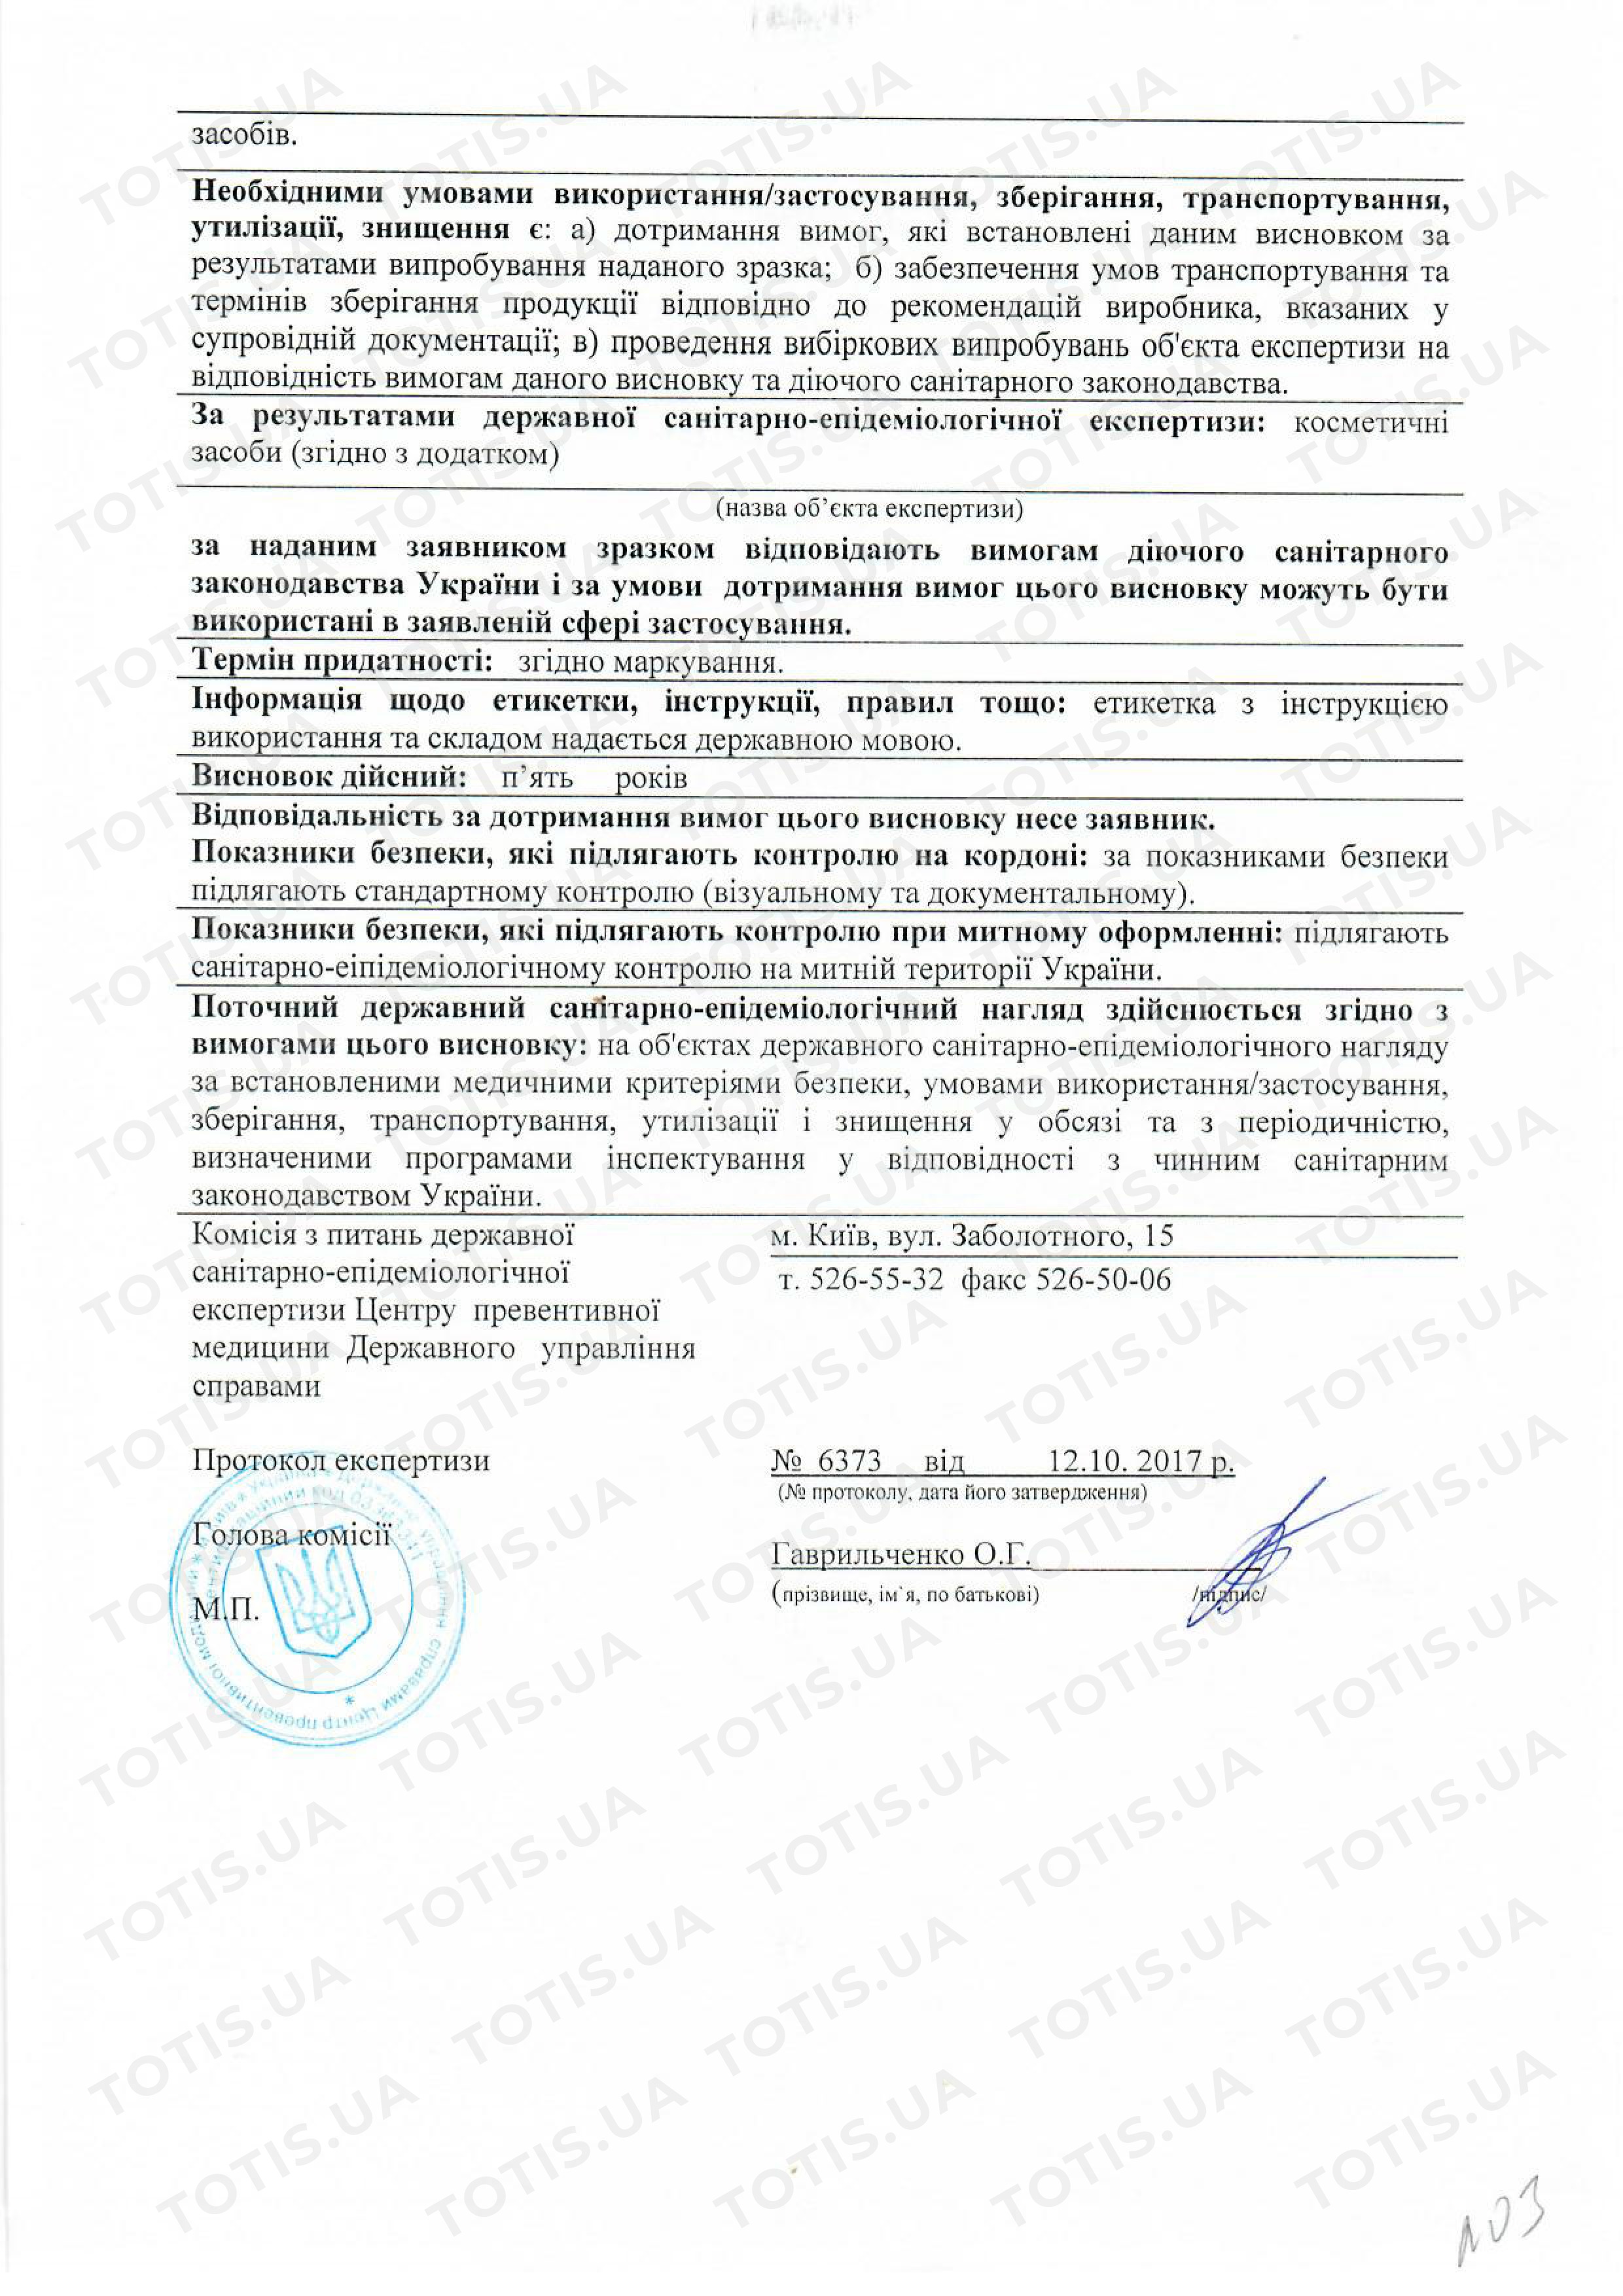 Сертификат препаратов Mastelliв Украине